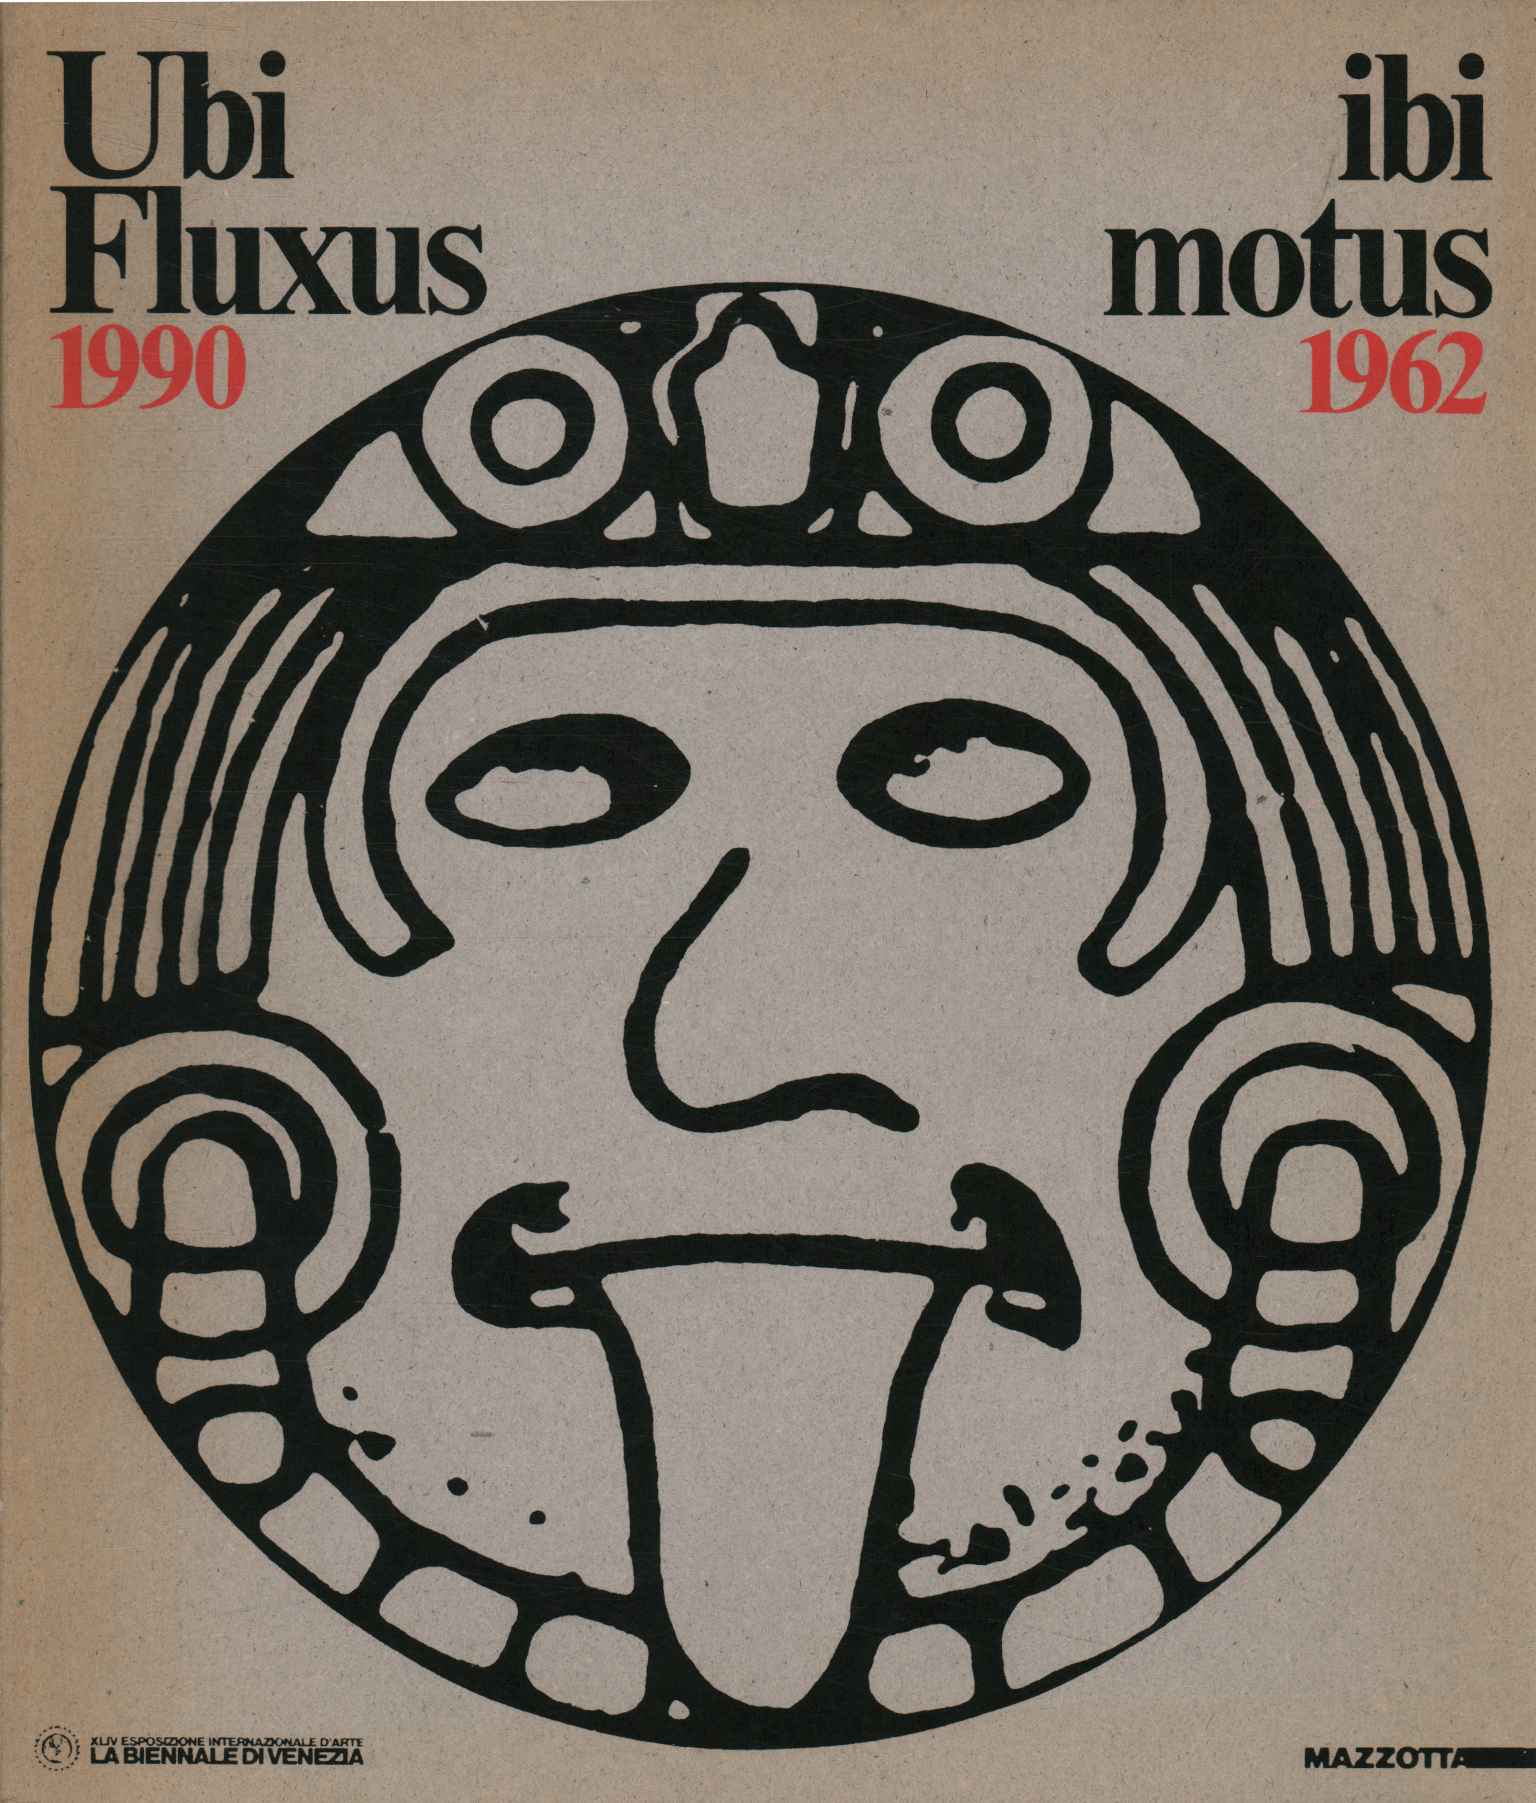 Ubi Fluxus ibi motus 1990-1962,Ubi Fluxus ibi motus 1990-1962